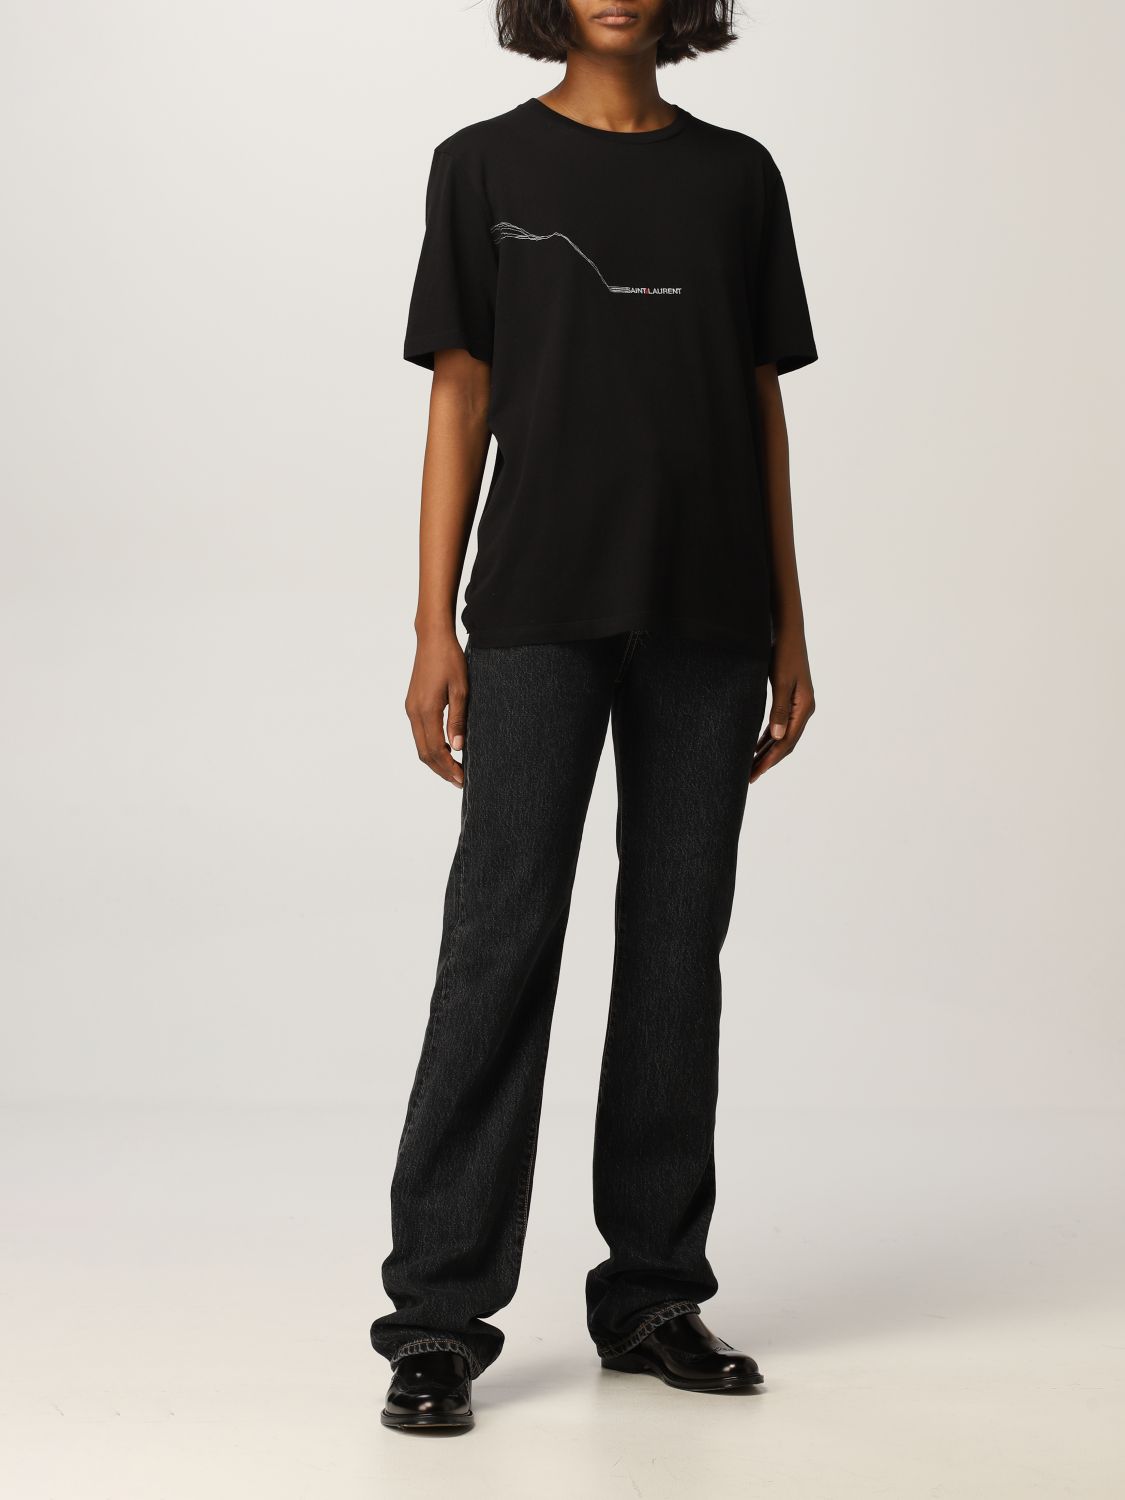 Camiseta Saint Laurent: Camiseta mujer Saint Laurent negro 2